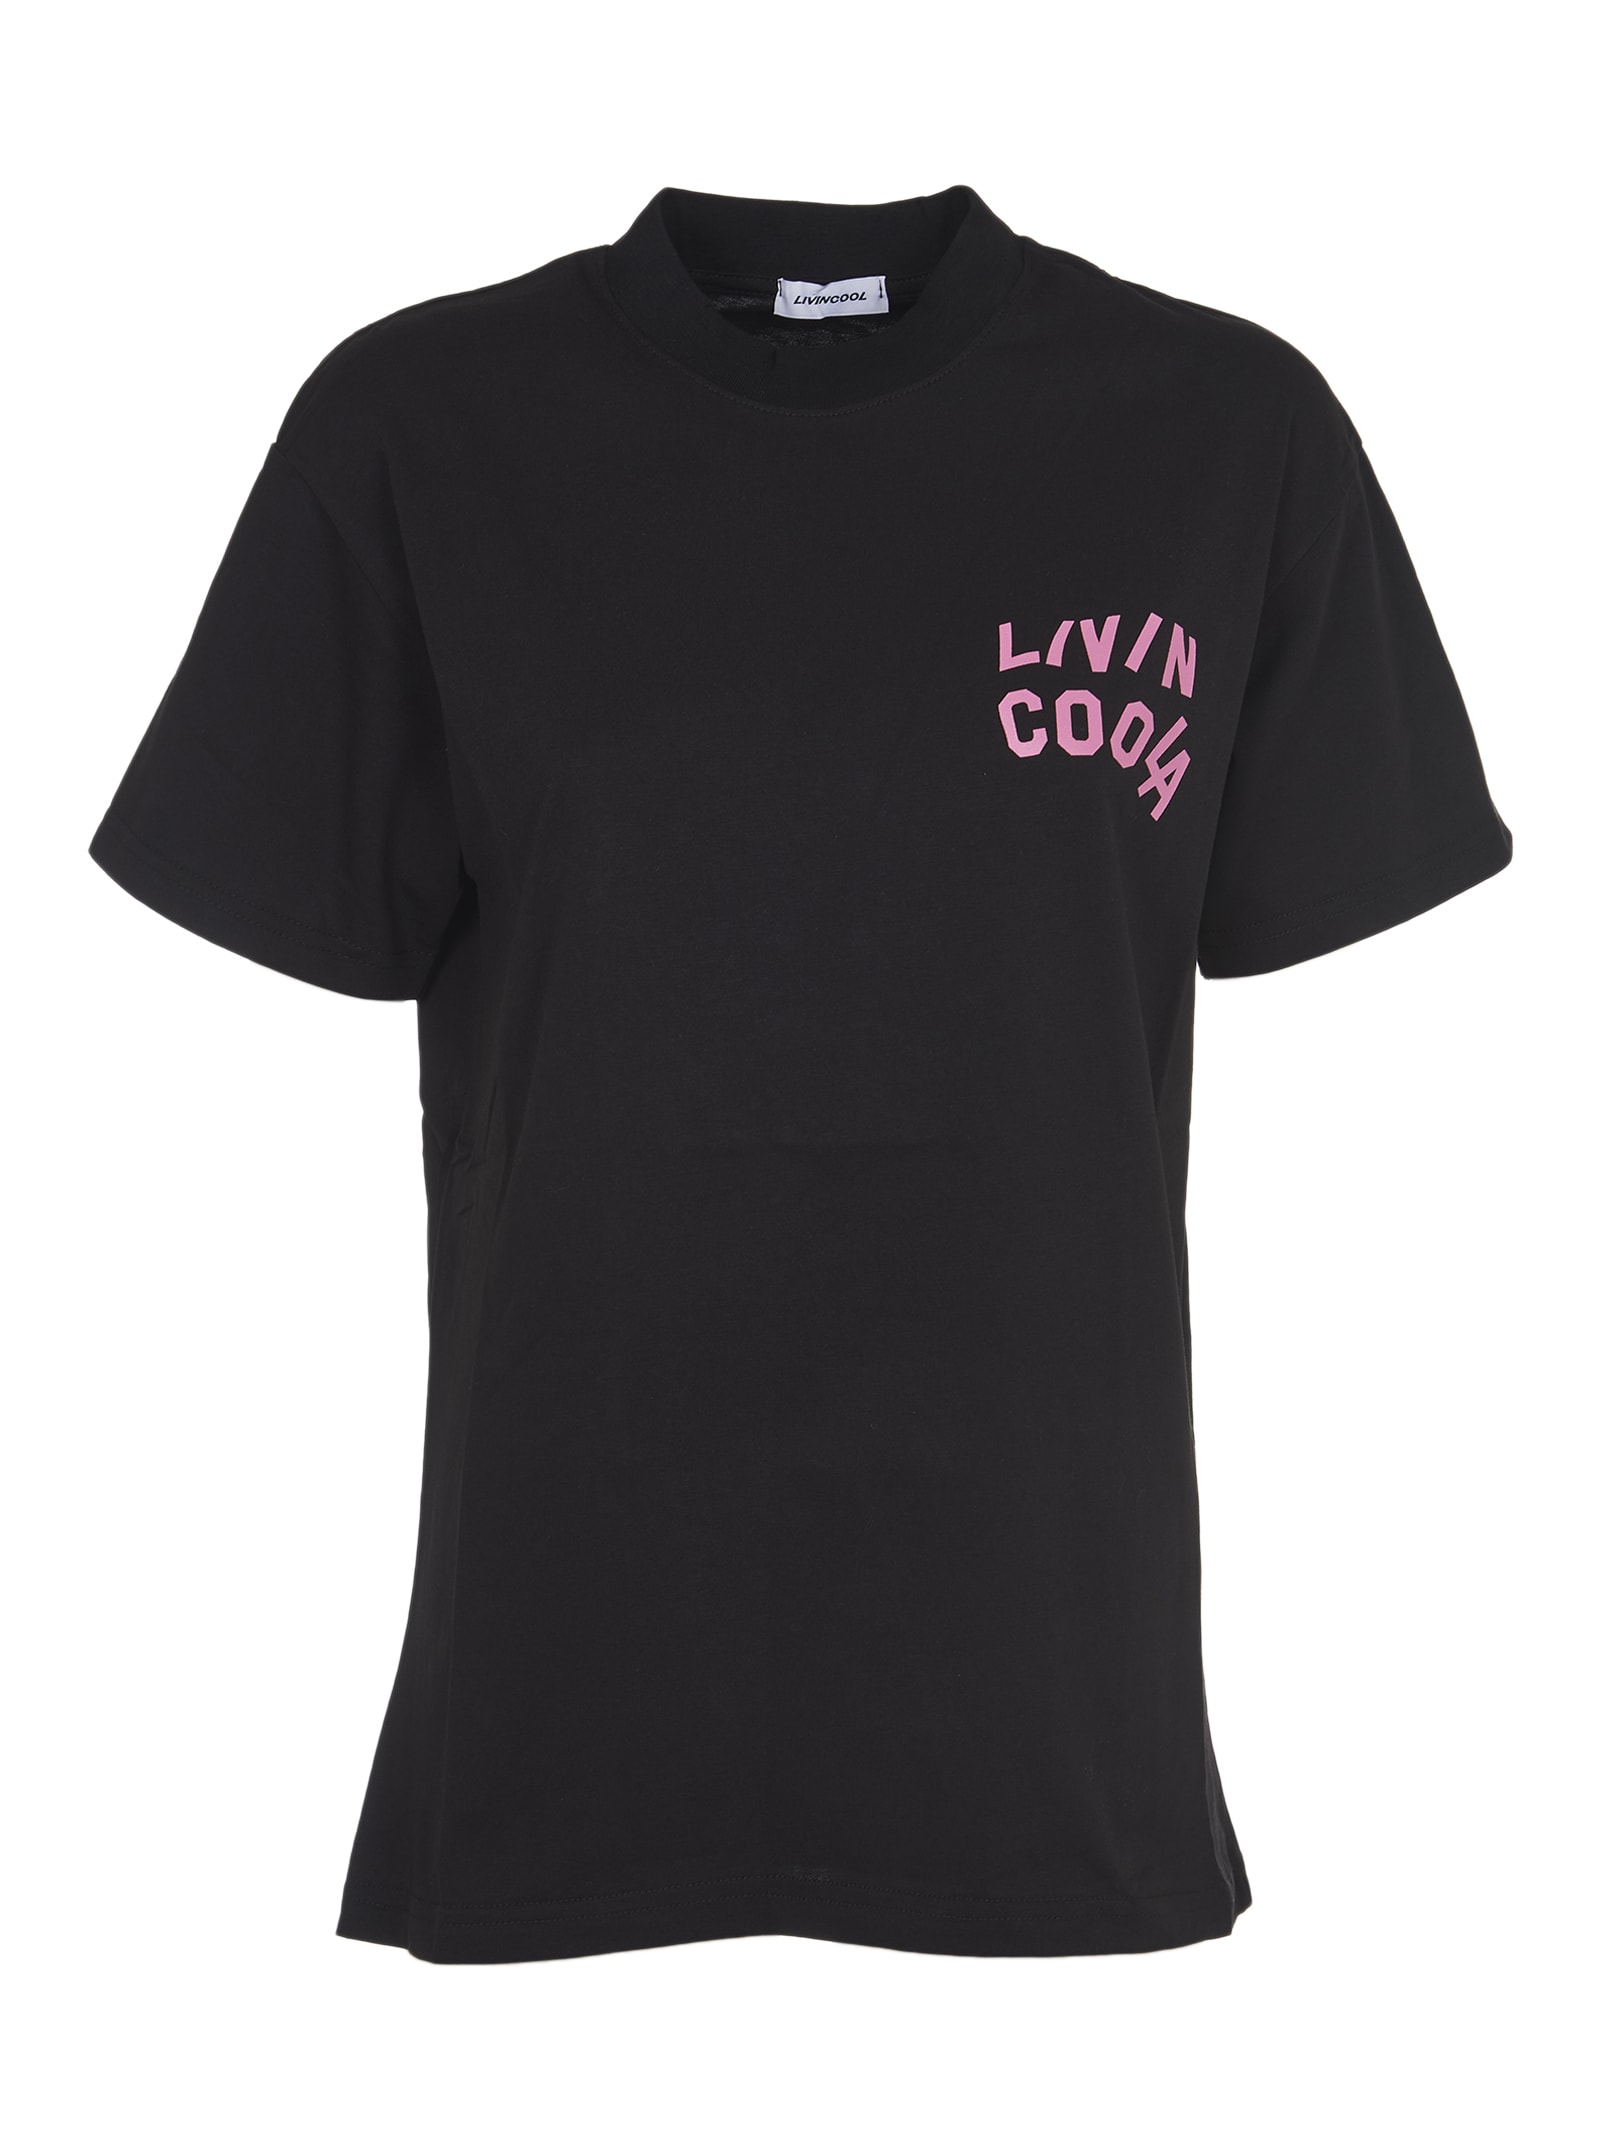 LIVINCOOL Balck T-shirt With Logo